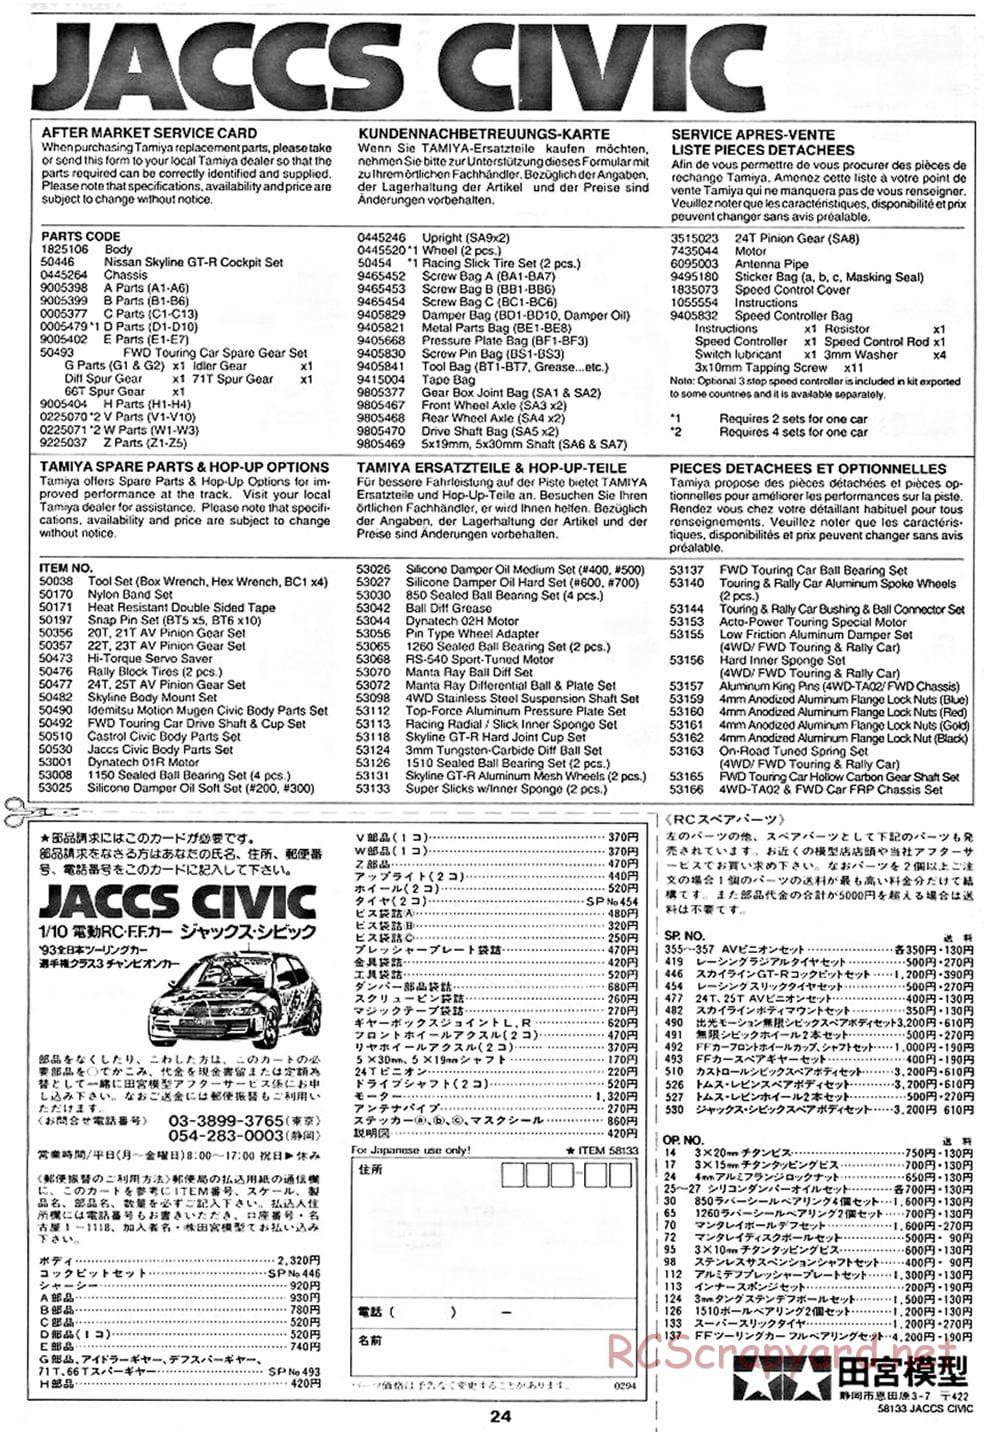 Tamiya - JACCS Honda Civic - FF-01 Chassis - Manual - Page 24